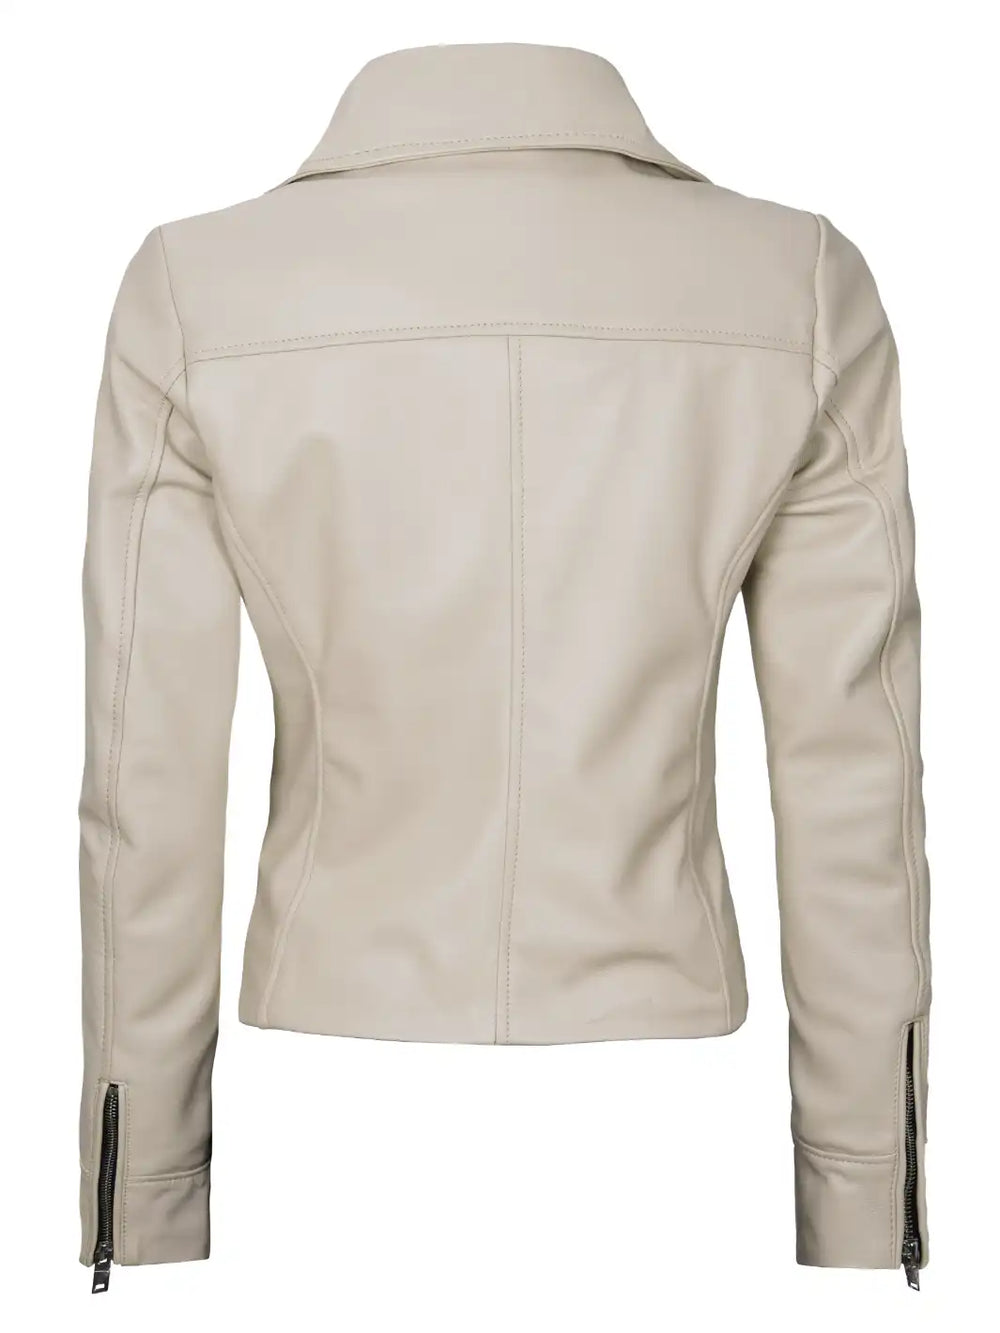 beige leather jacket for women